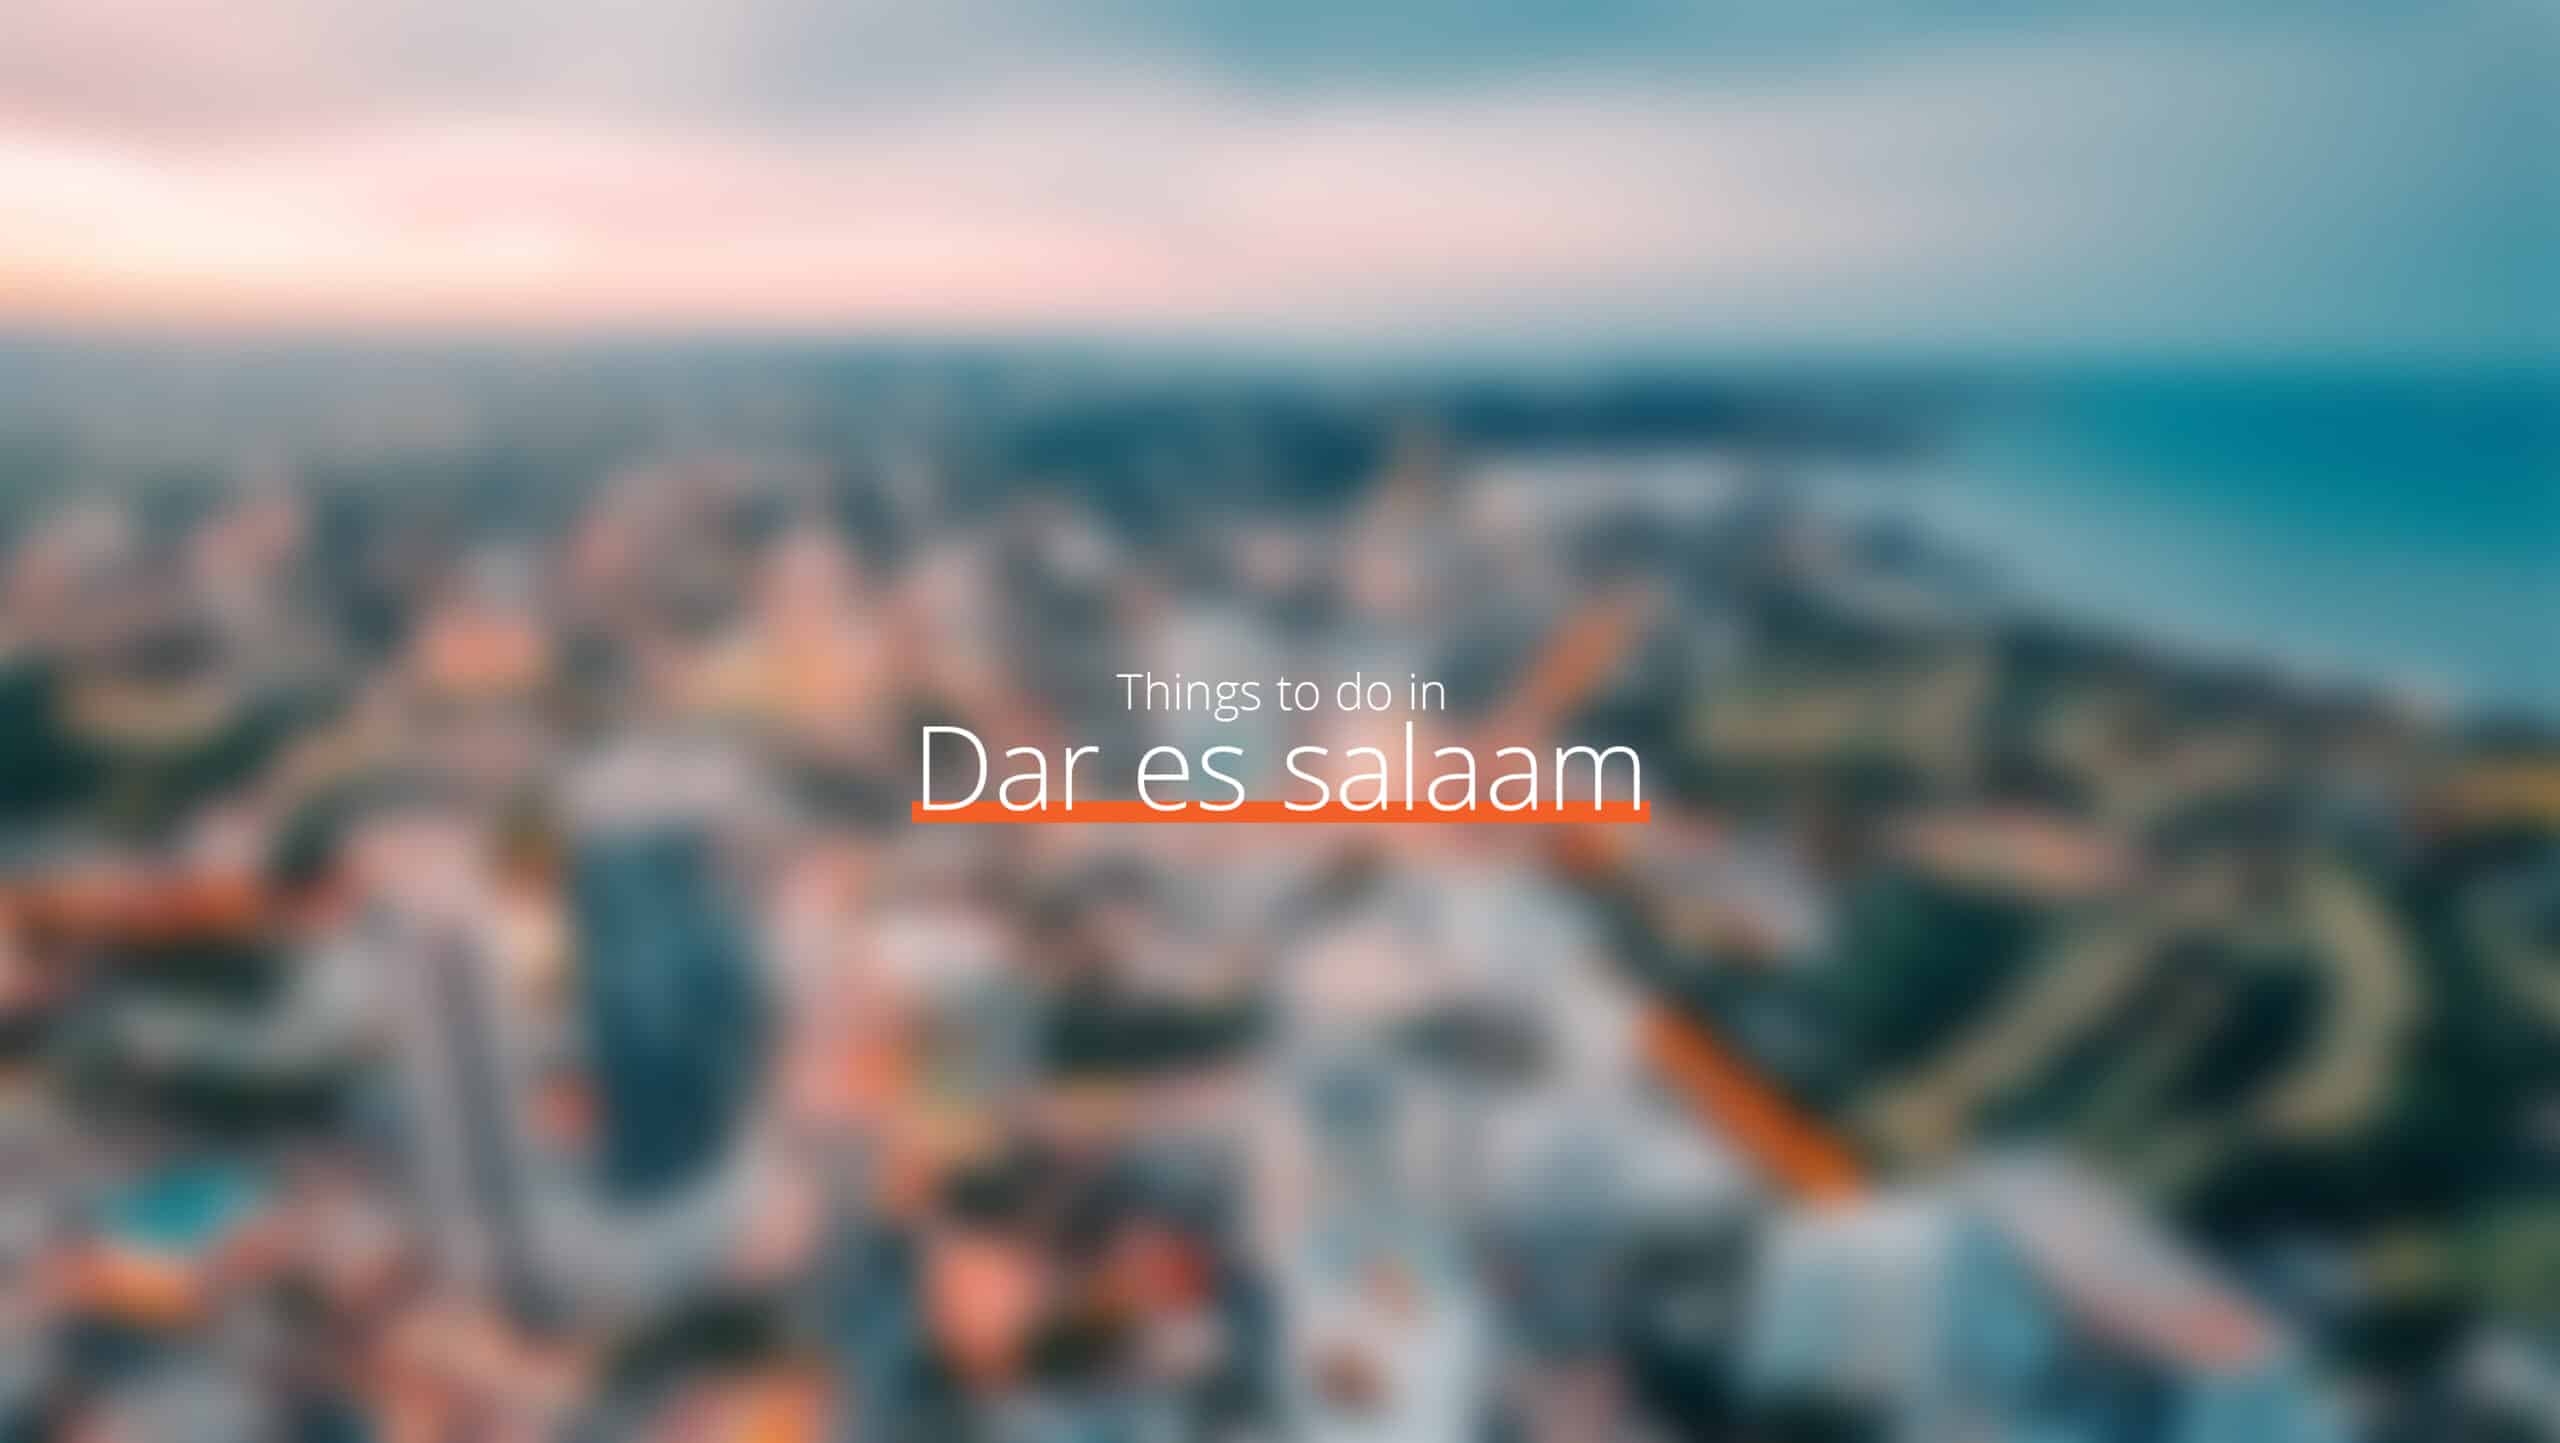 坦桑尼亚 - dar es salaam scaled - 11 月